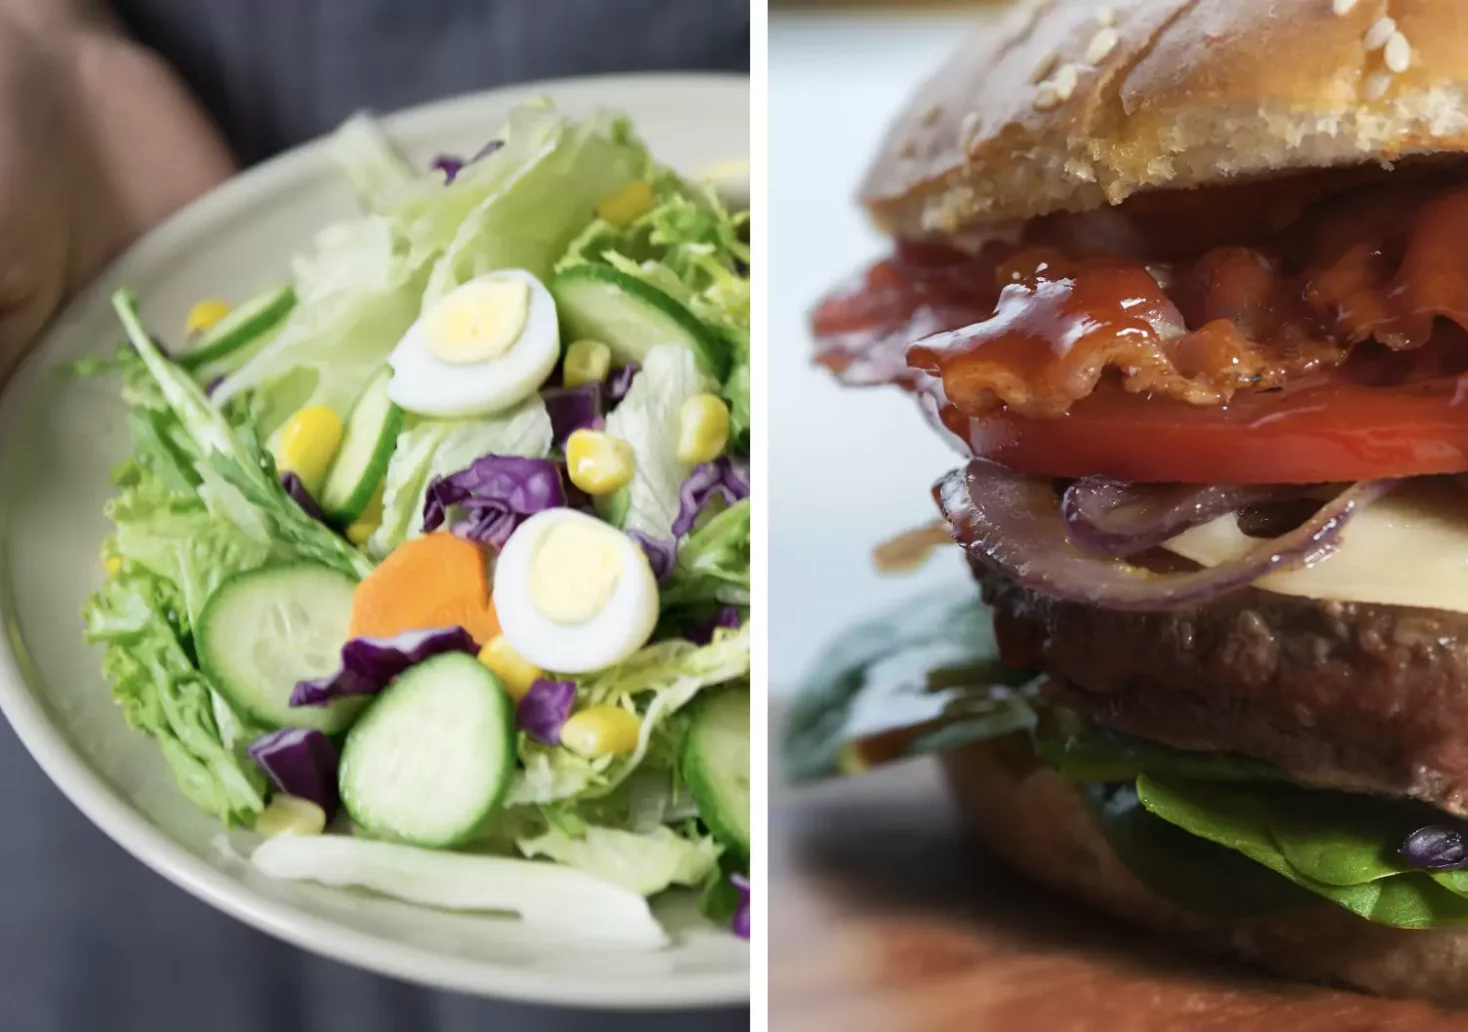 Foto auf 5min.at zeigt einen Salat und einen Burger.